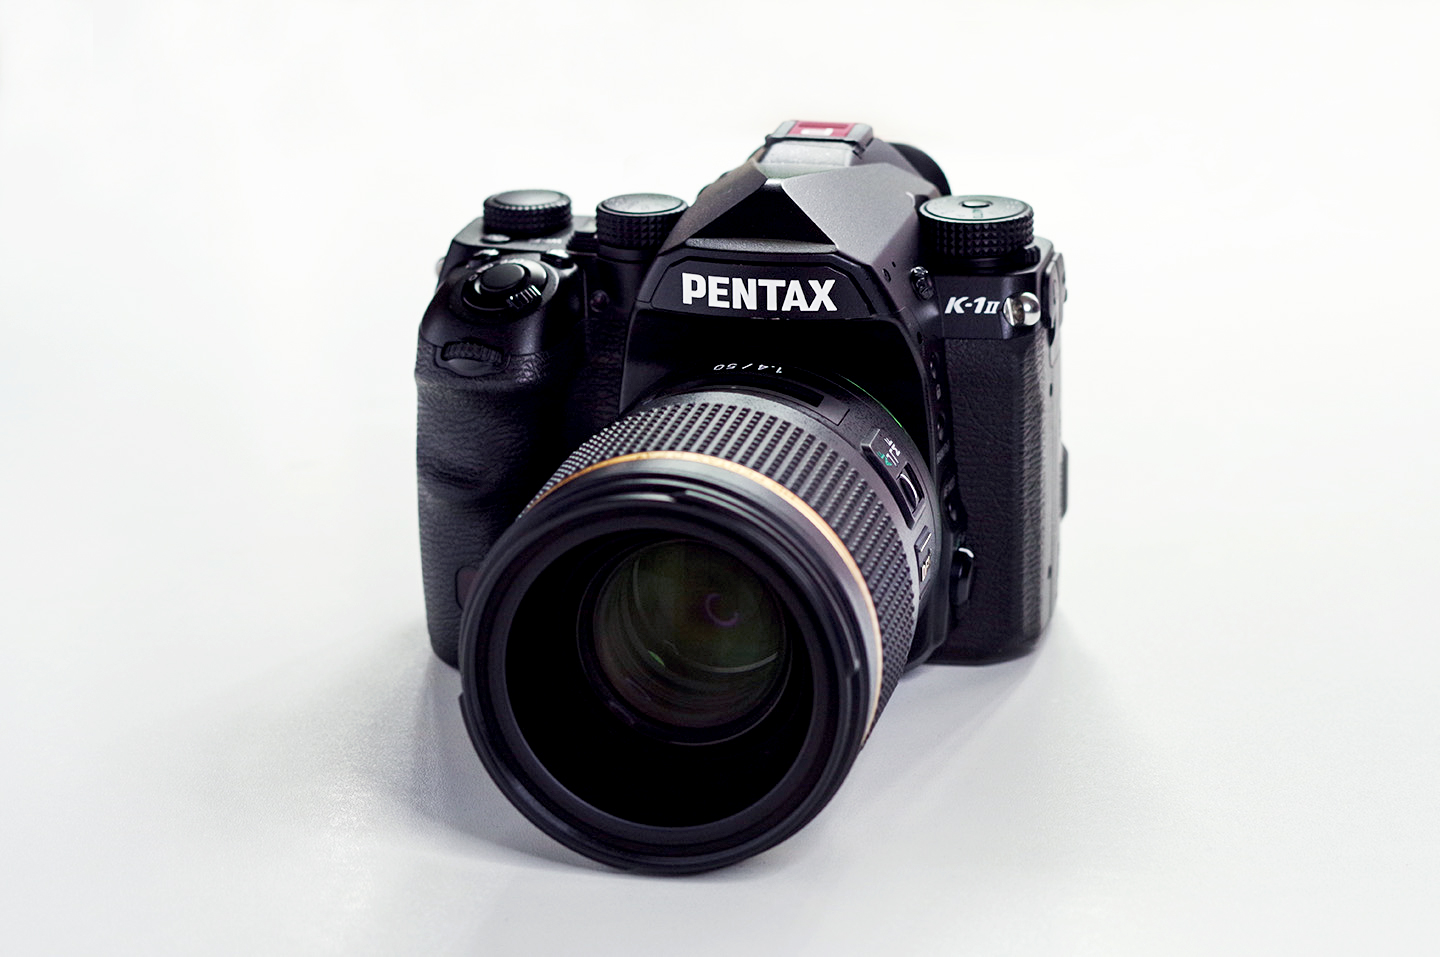 HD PENTAX-D FA★50mmF1.4 SDM AW 大口径単焦点レンズ 21260 - 1